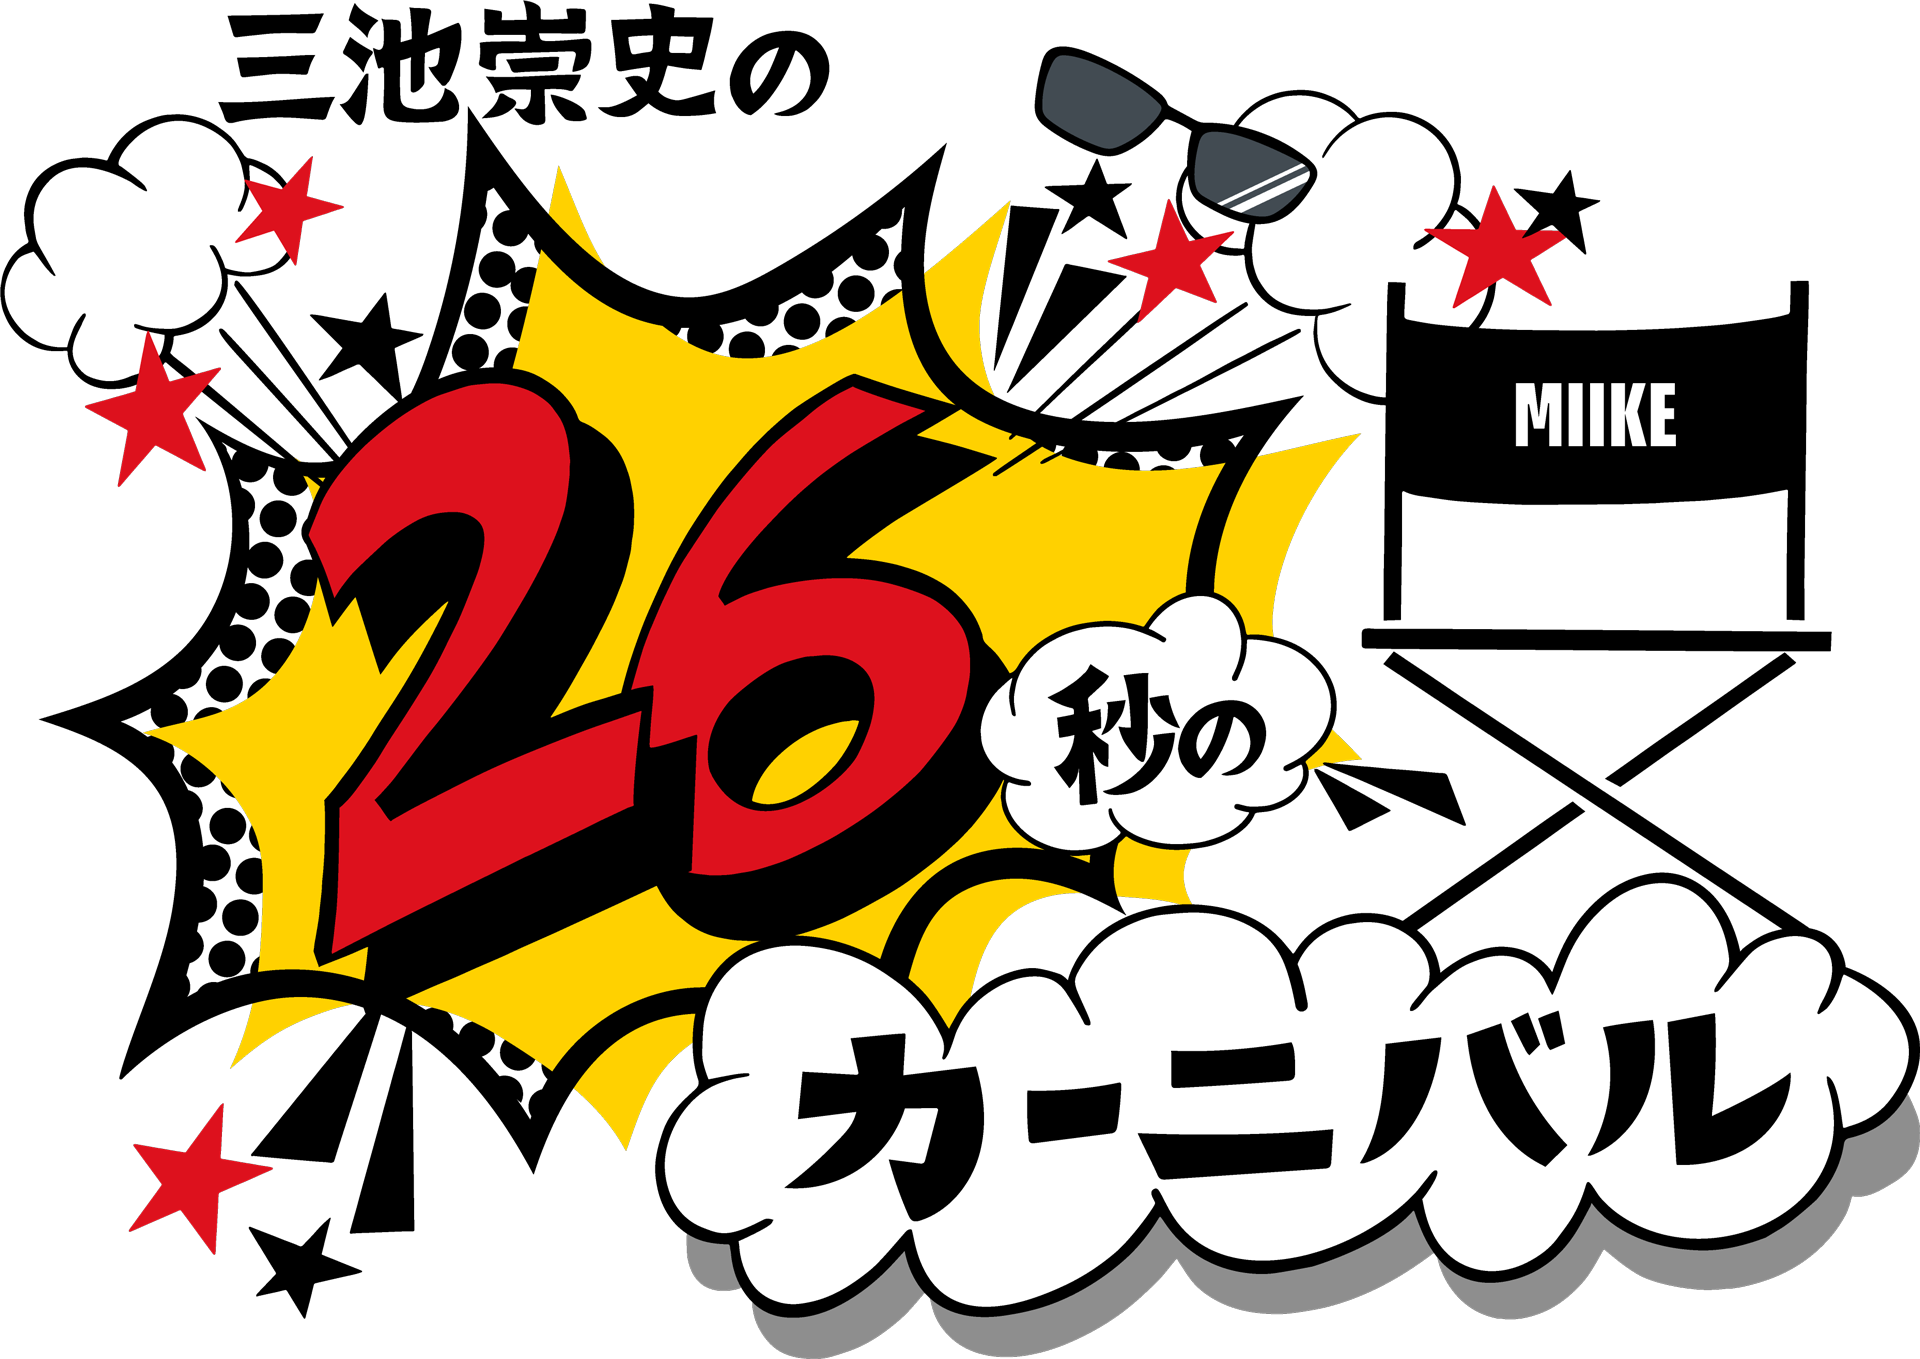 26秒のカーニバル presented by Takashi Miike